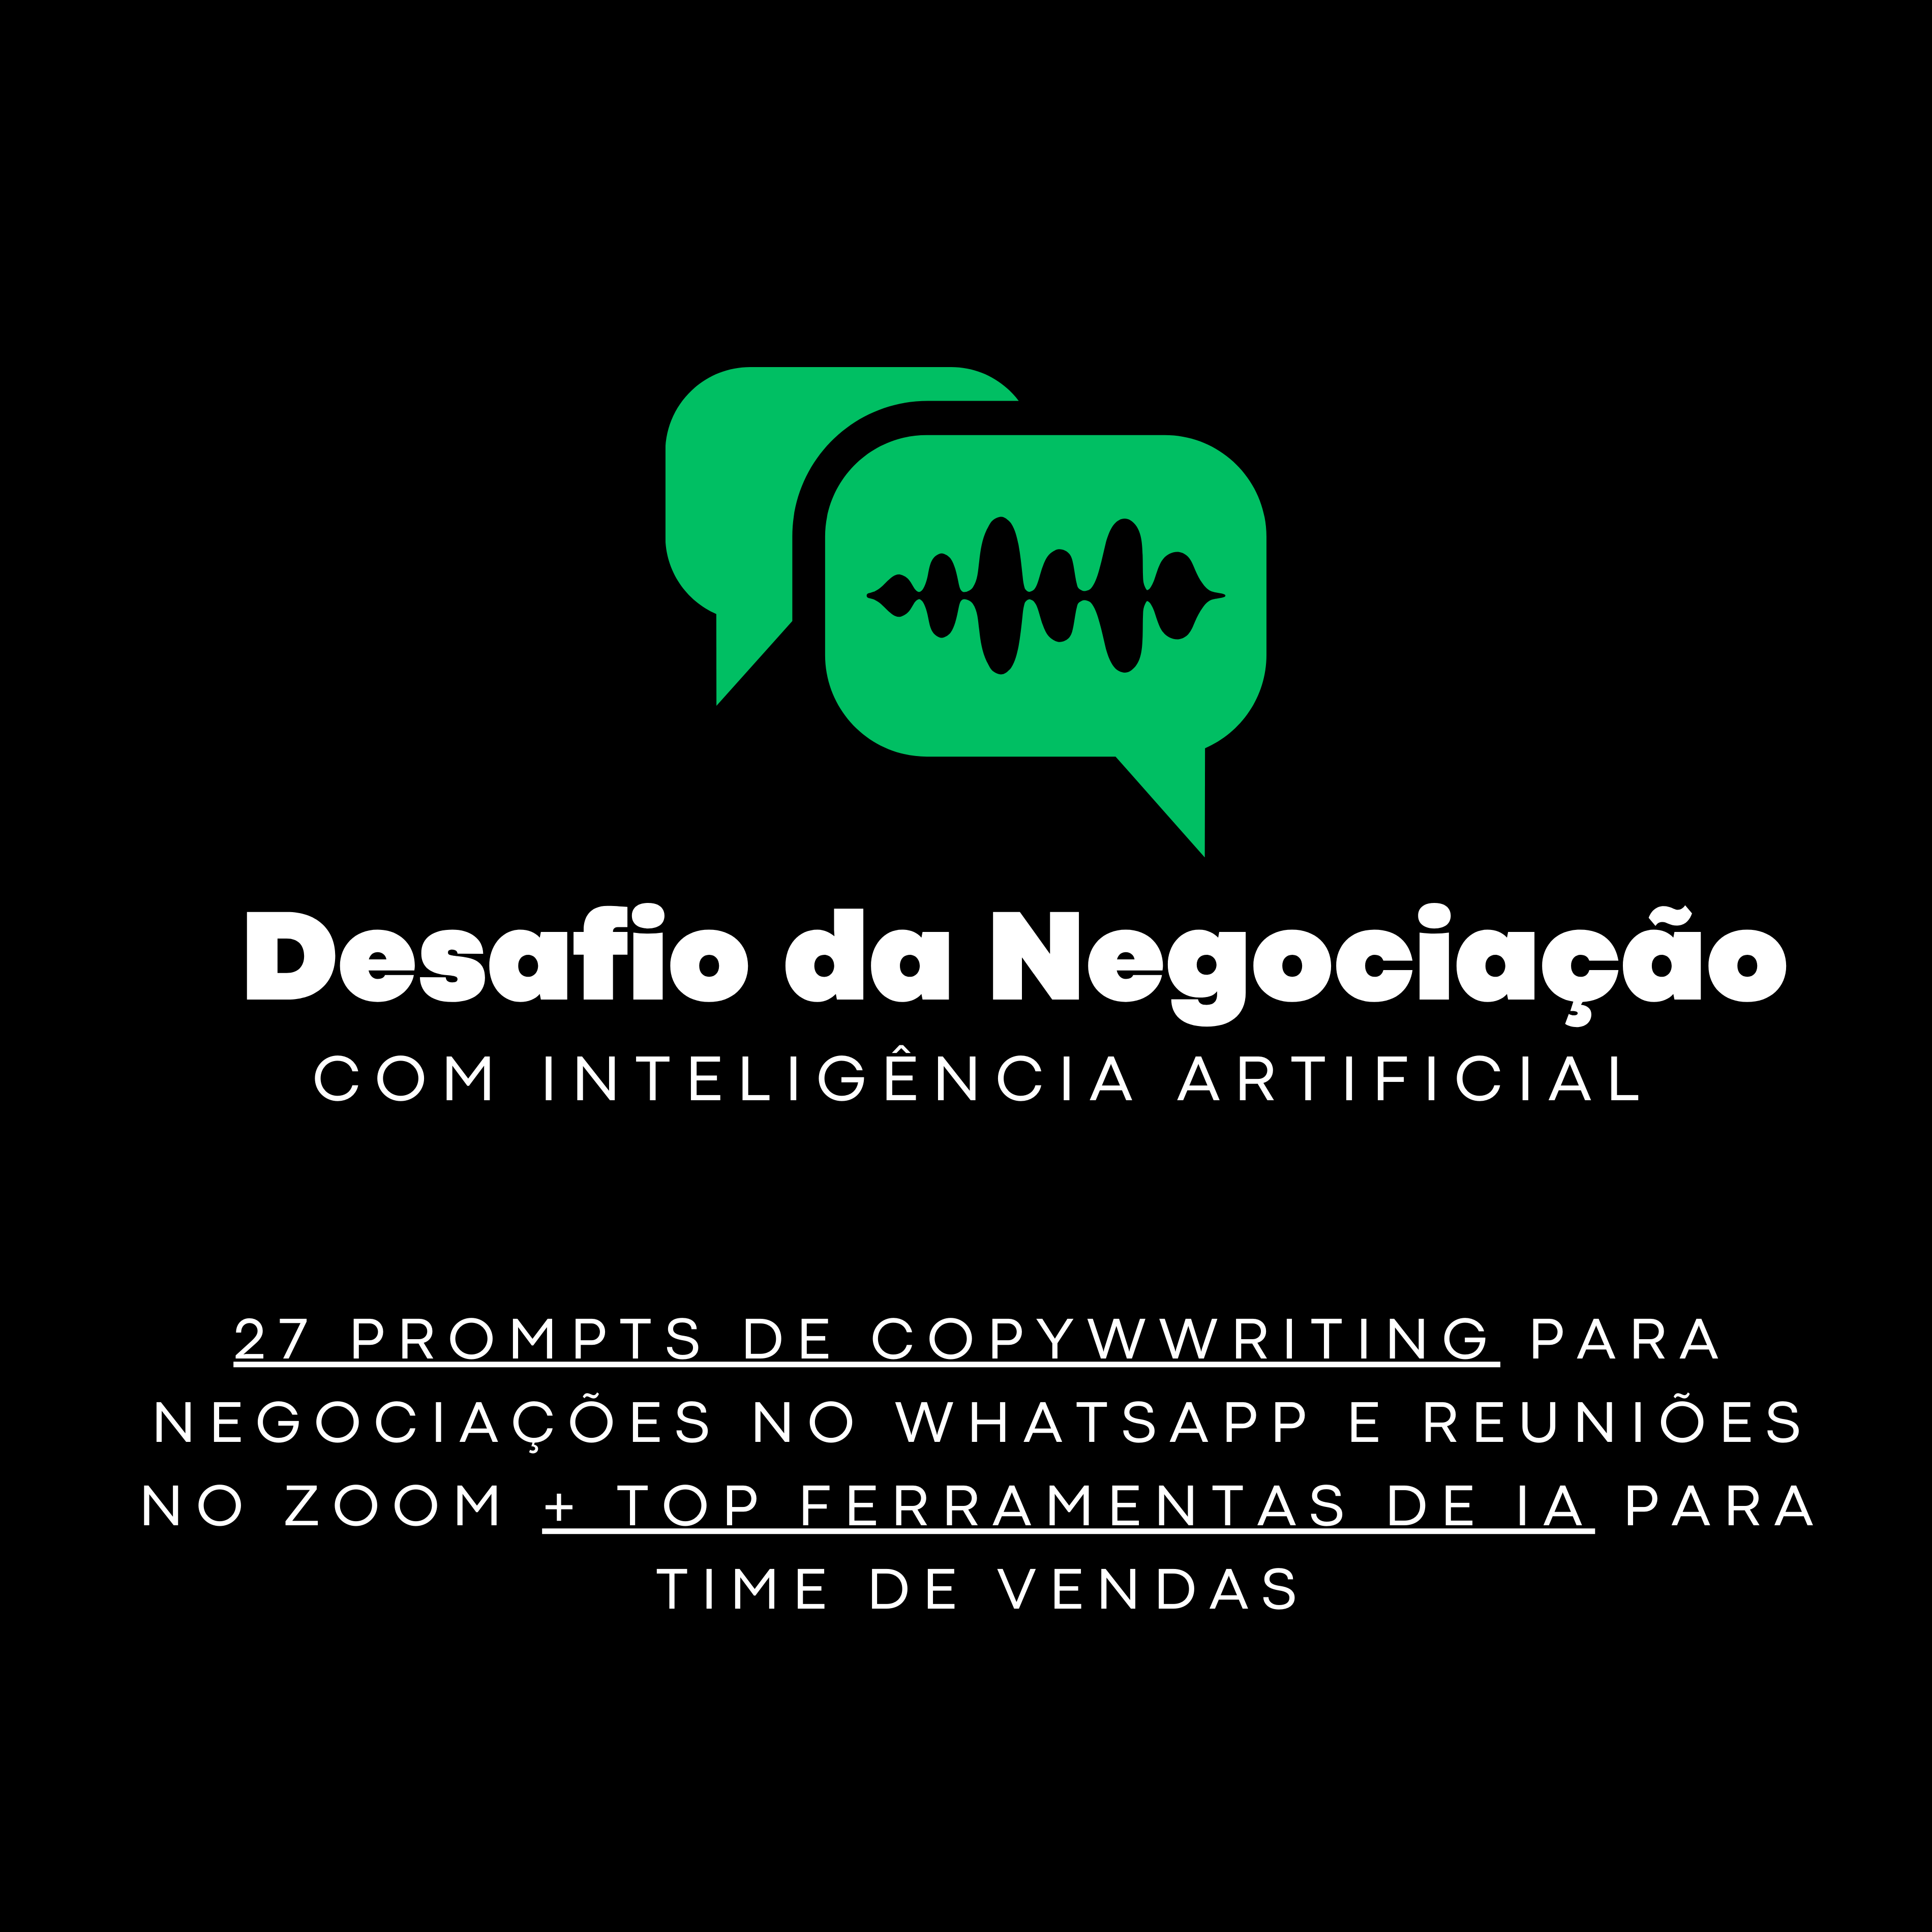 Desafio da Negociação com Inteligência Artificial: 27 prompts de copy para Whatsapp e reunião no ZOOM (DIA 9 DE OUTUBRO 13H - BRASÍLIA) 113